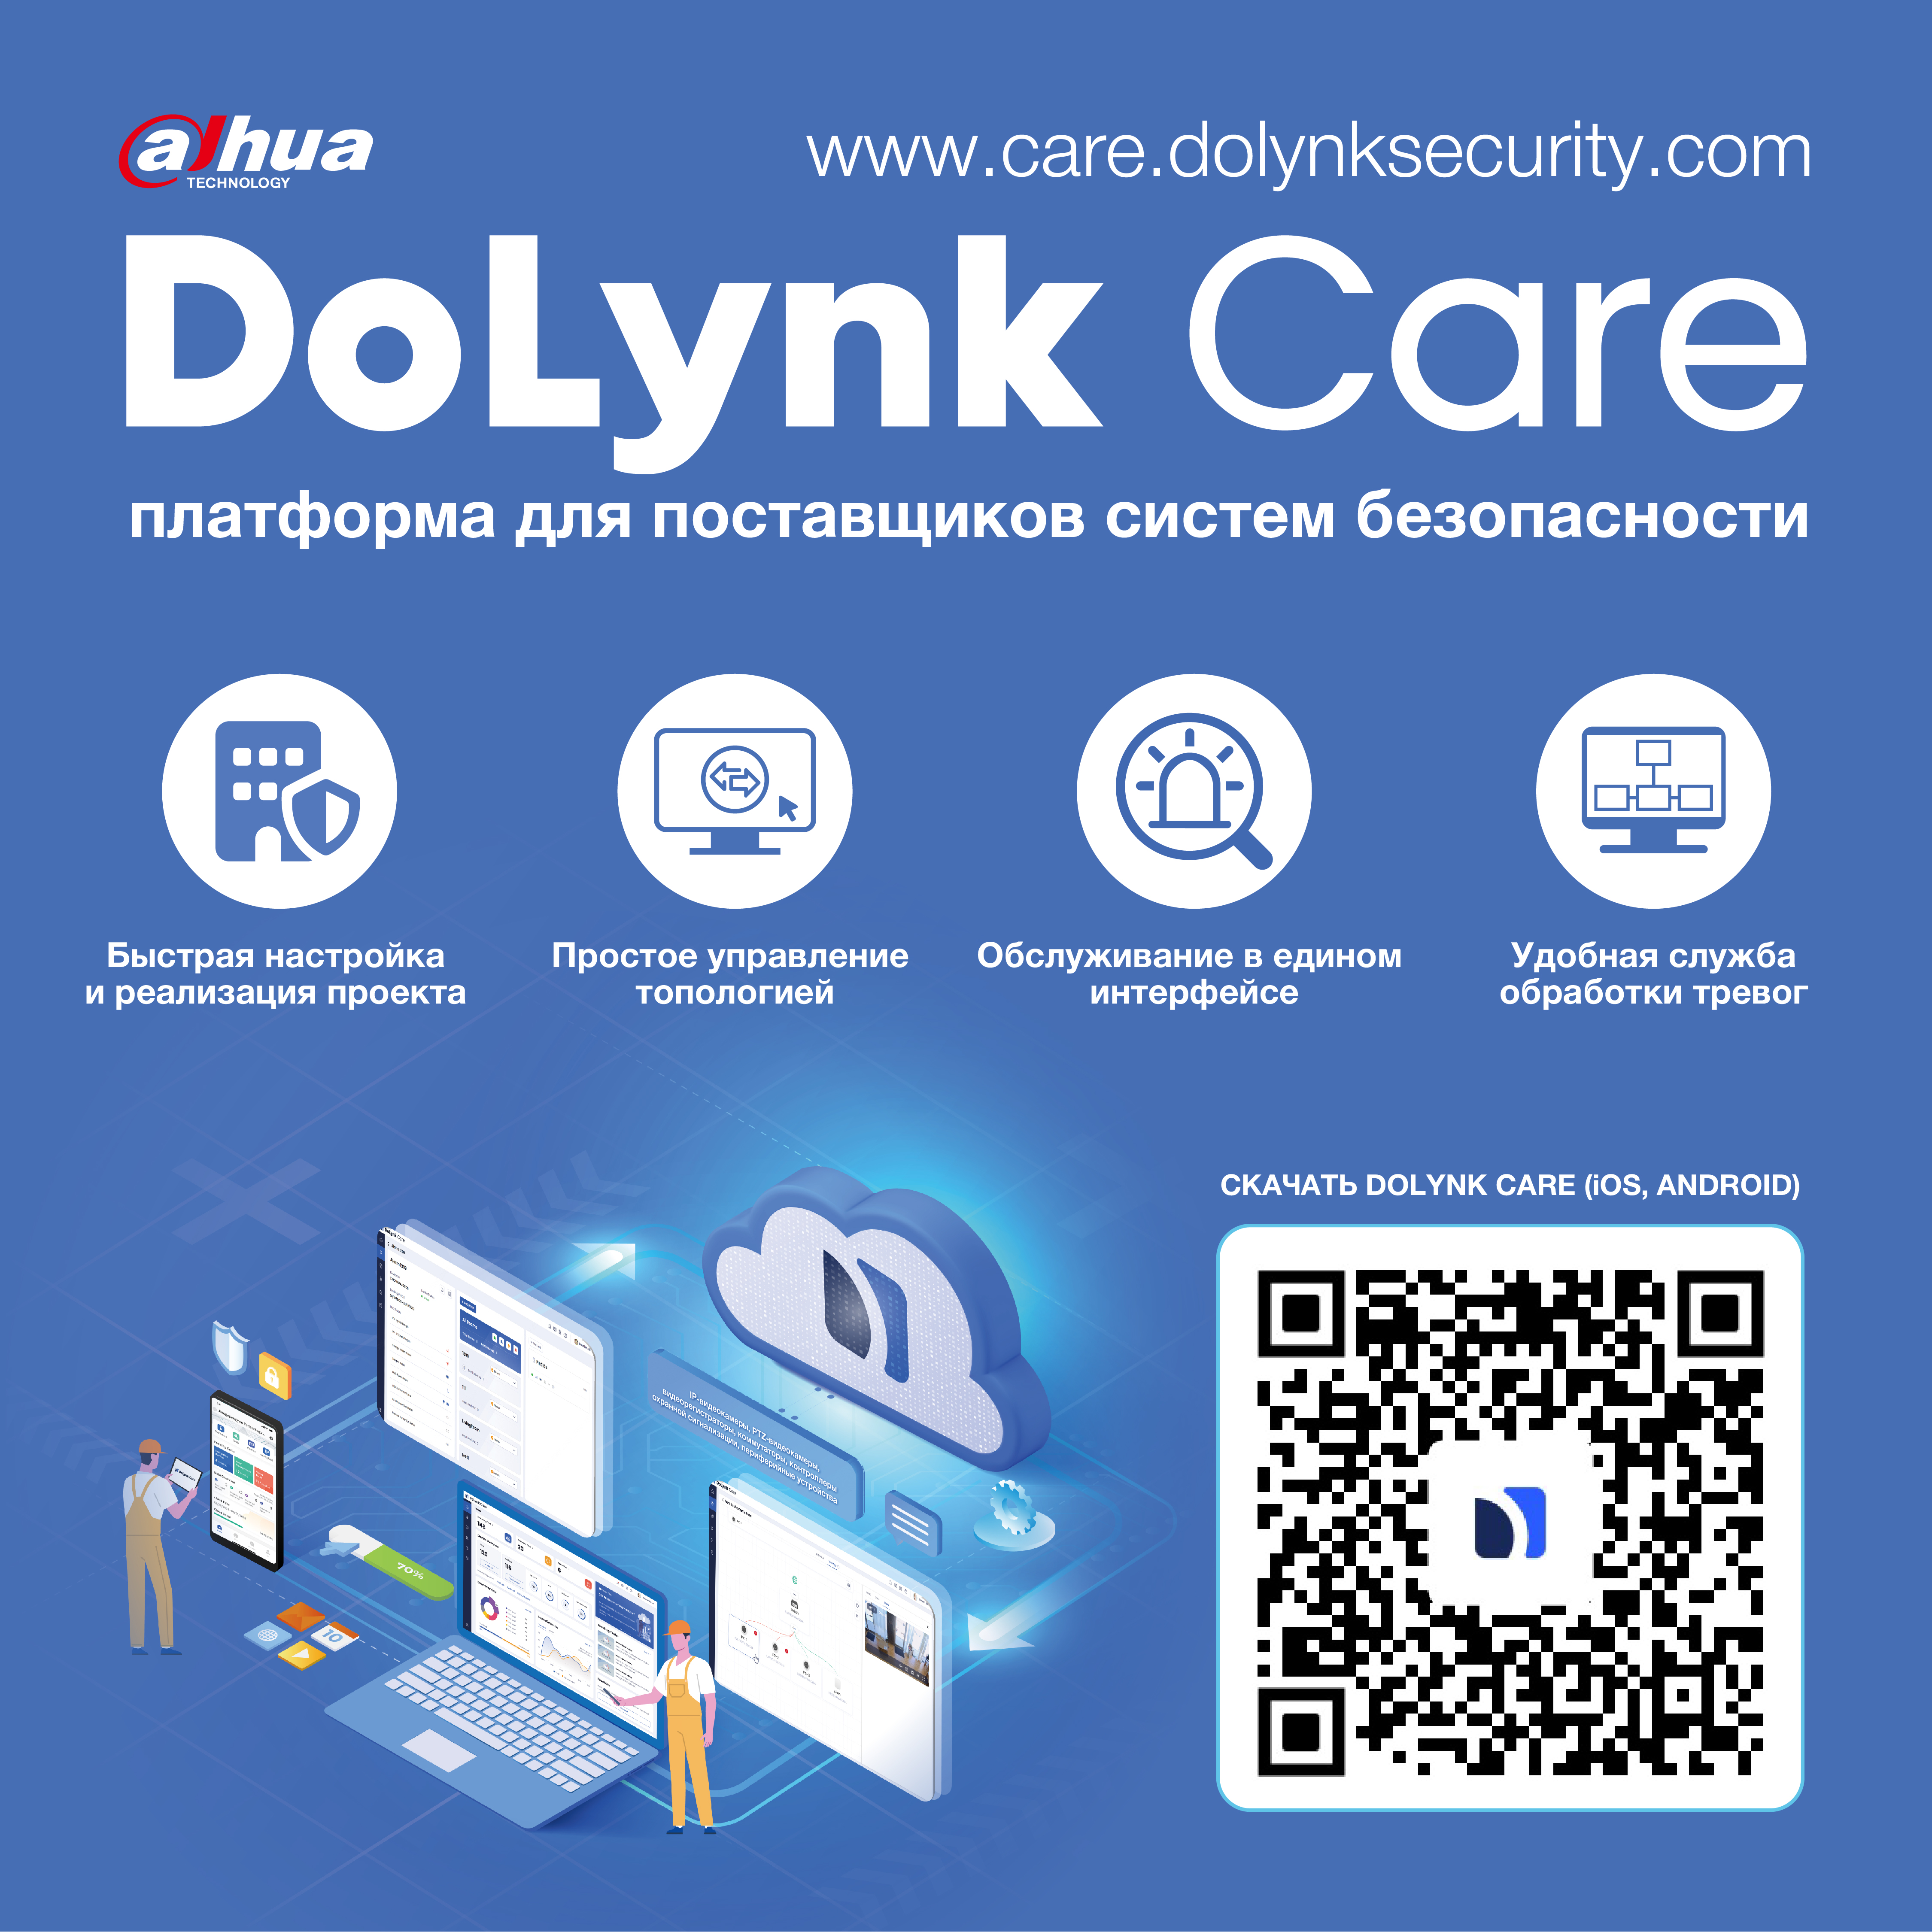 DoLynk Care - облачная платформа для поставщиков безопасности<